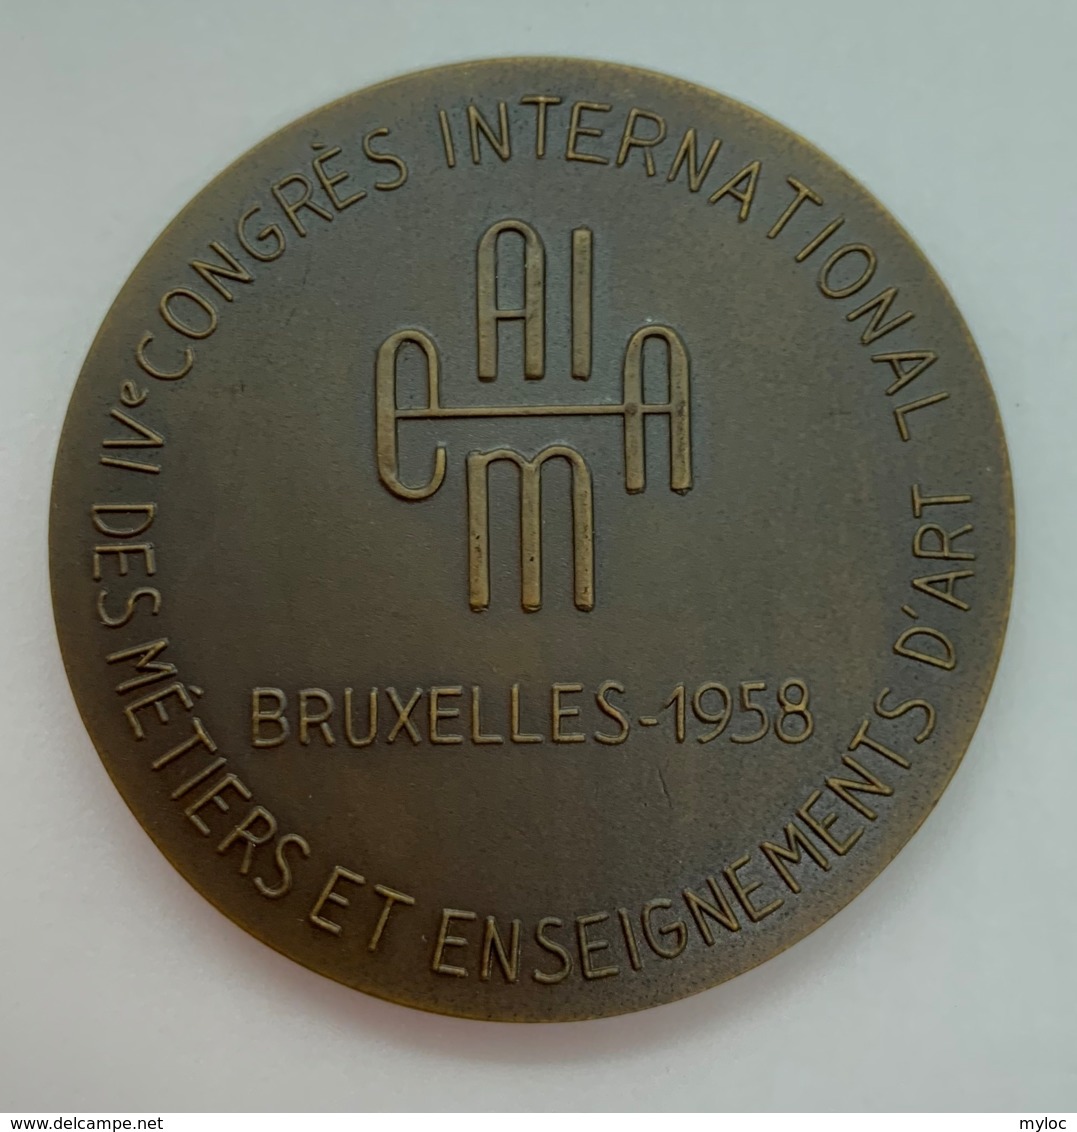 Medaille. H. Elstrom. Congrès International Des Métiers Et Enseignements D'art 1958. - Unternehmen